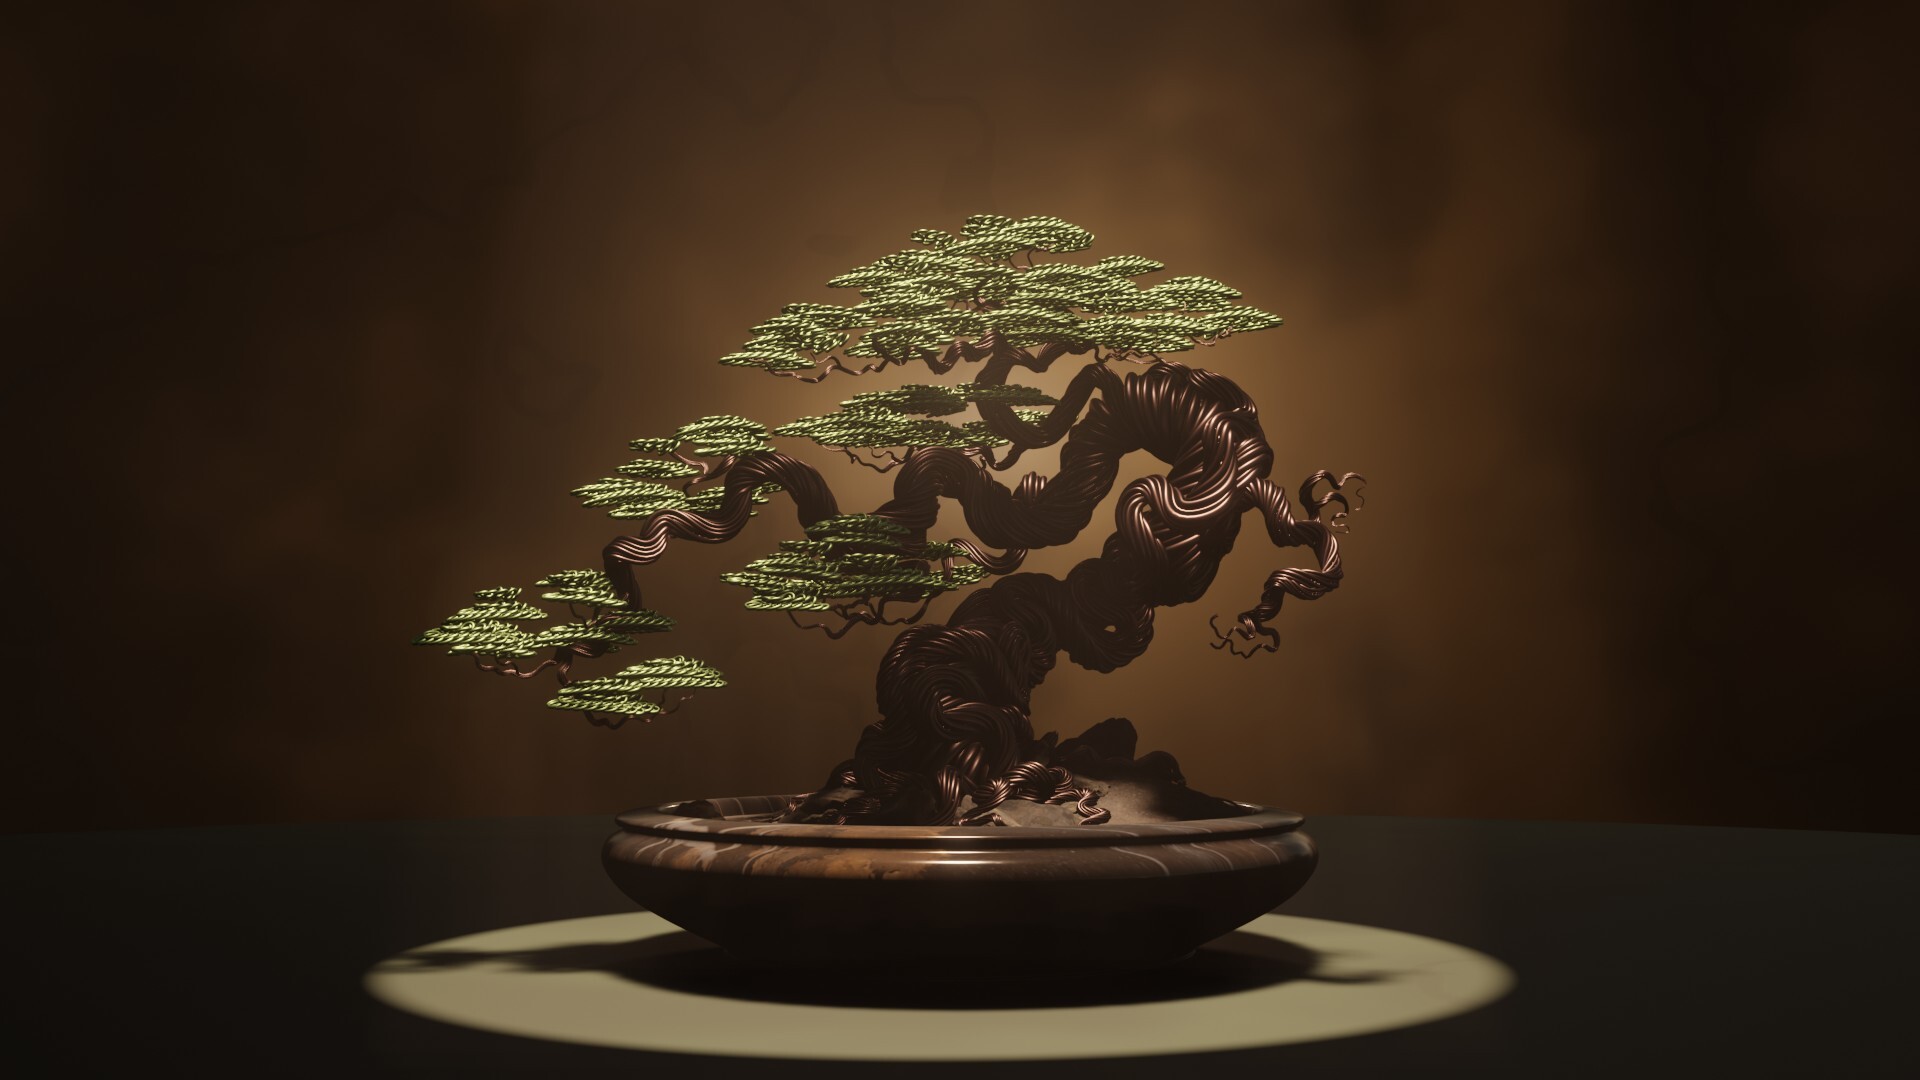 ArtStation - Bonsai tree copper wire